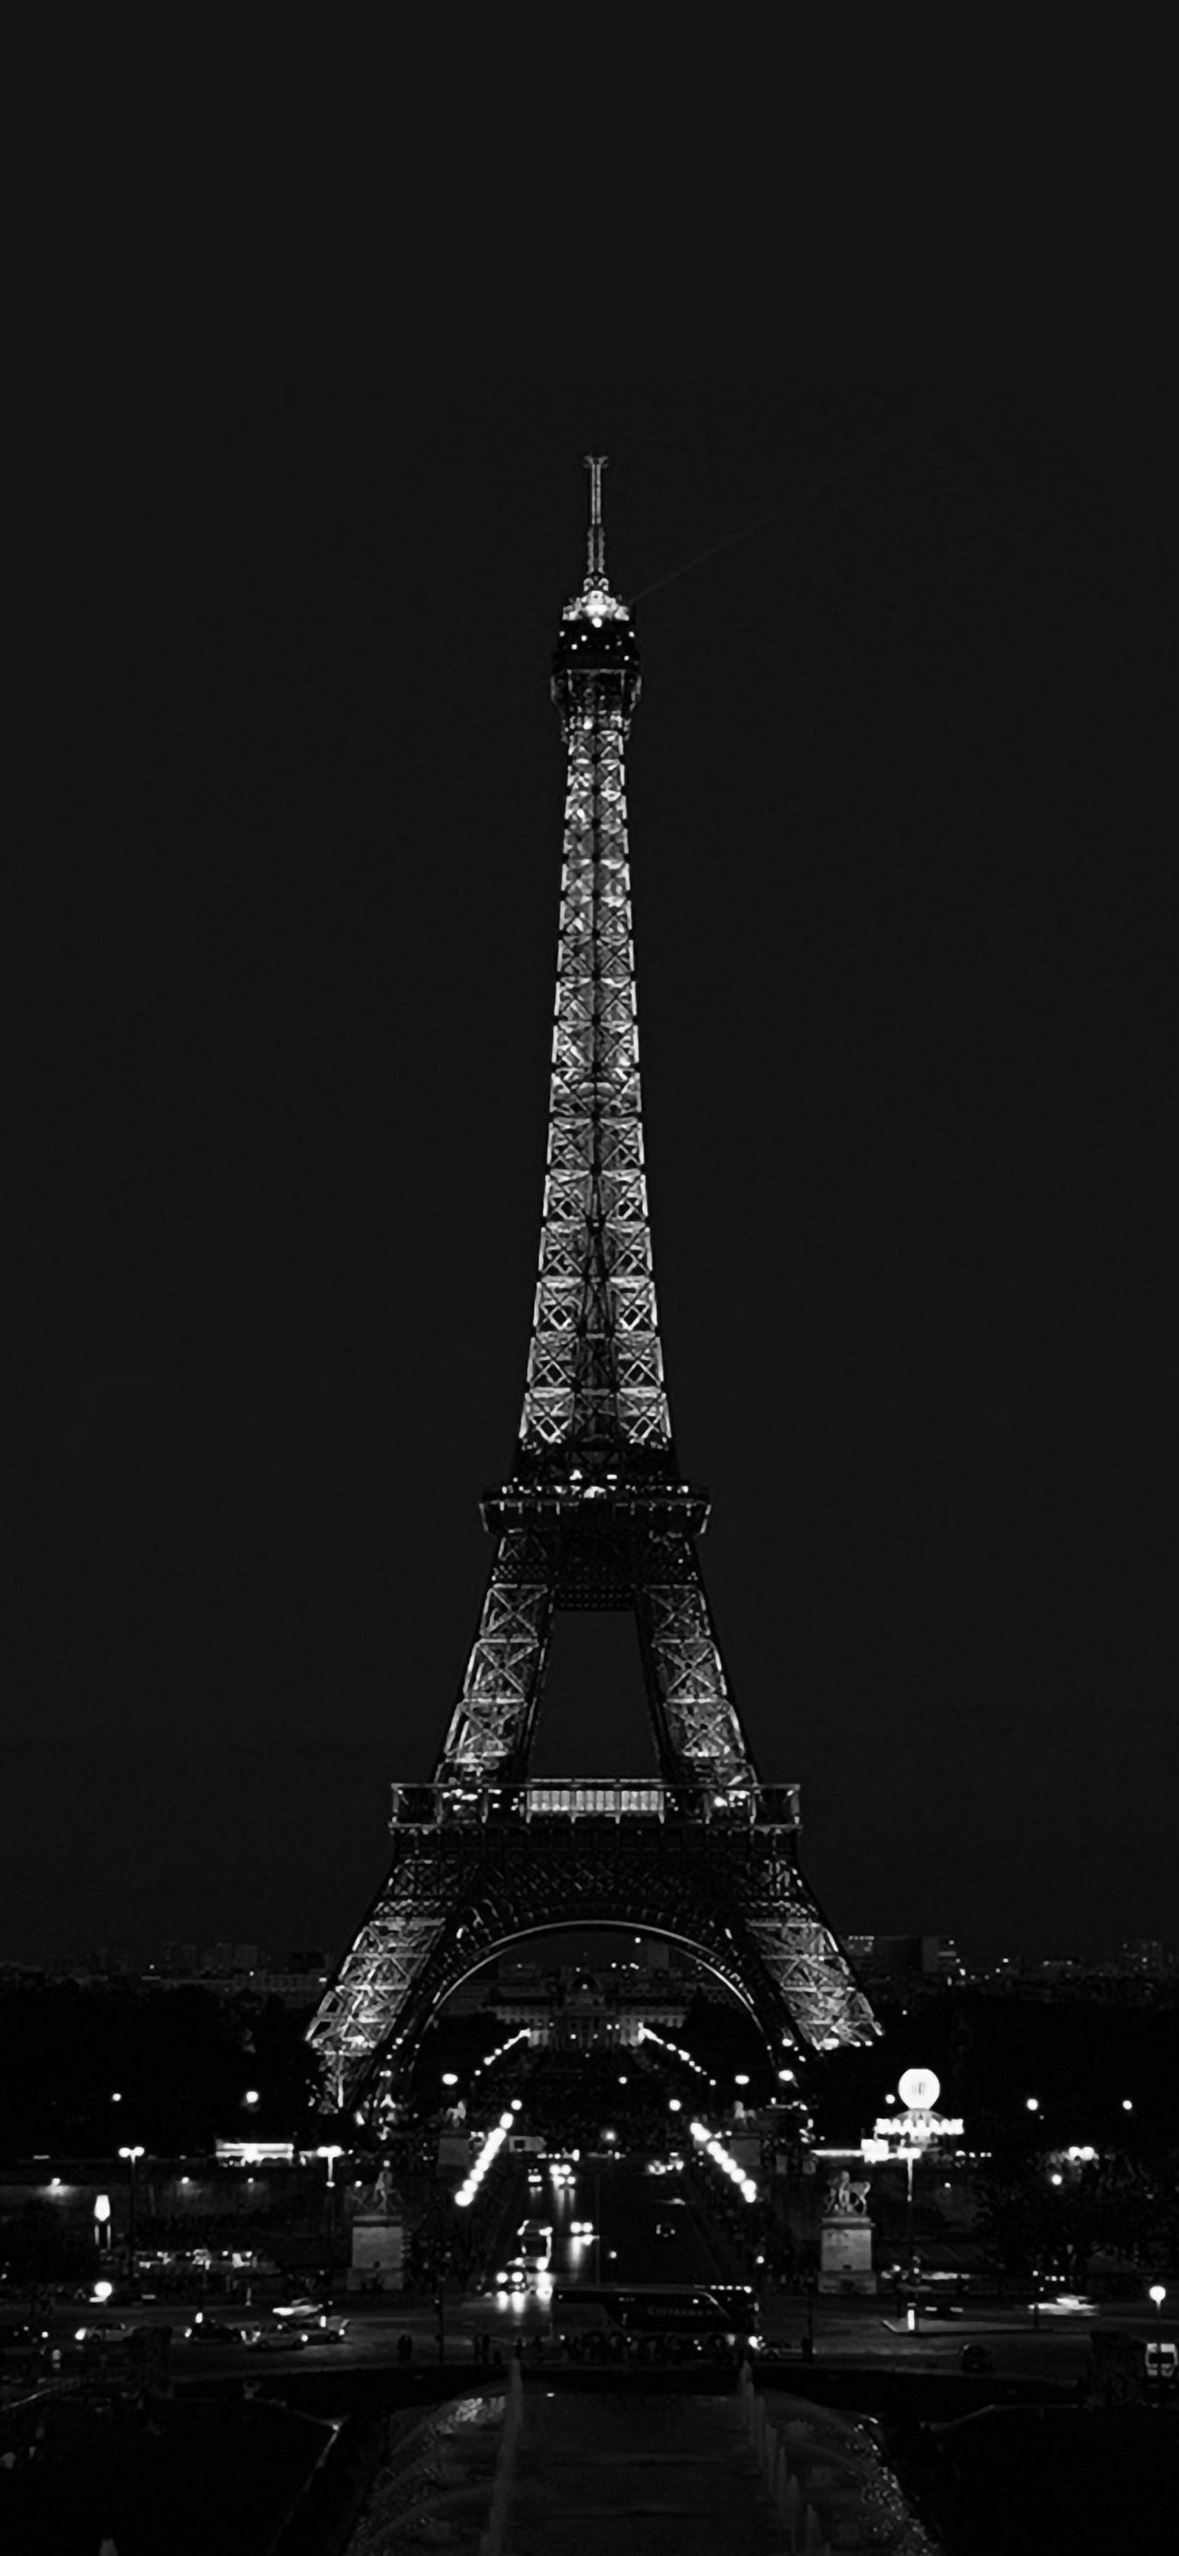 Tháp Eiffel, biểu tượng lãng mạn và là địa điểm được yêu thích nhất của du khách khi tới Paris. Hãy truy cập ngay để khám phá những bức ảnh độc đáo về tháp Eiffel và những góc phố cổ xinh đẹp của thủ đô nước Pháp.